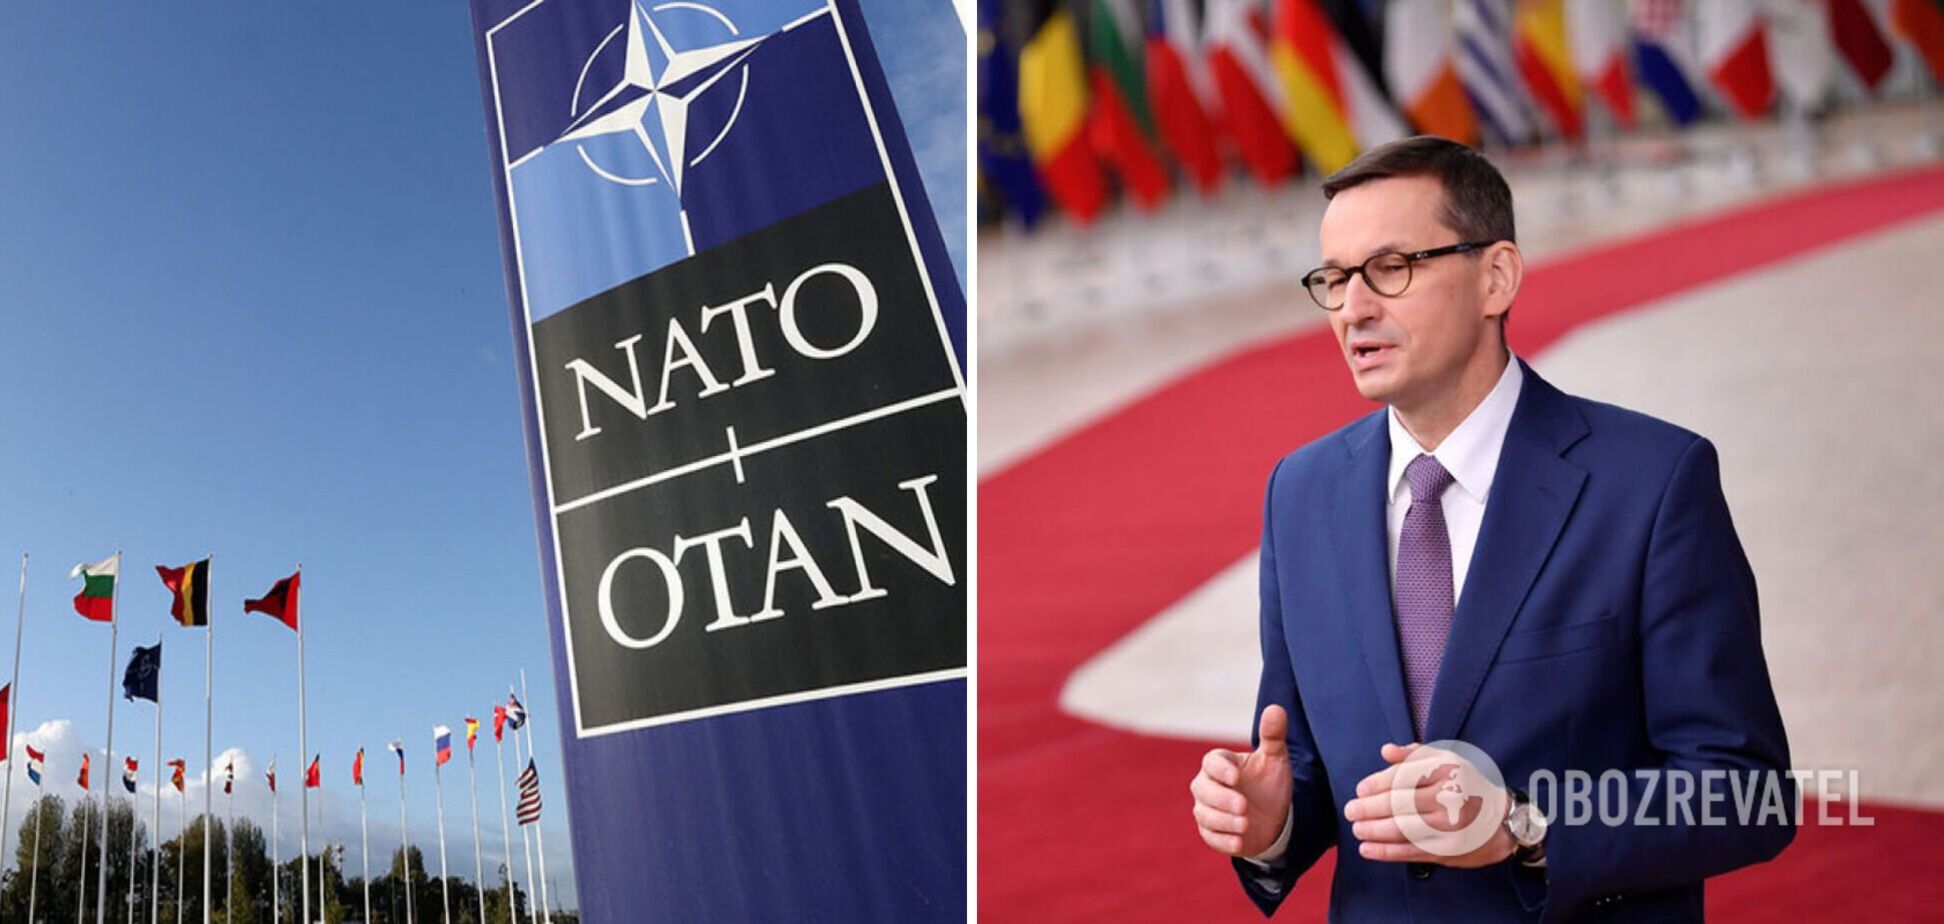 Все больше стран поддерживают введение в Украину миротворцев НАТО, – польский премьер